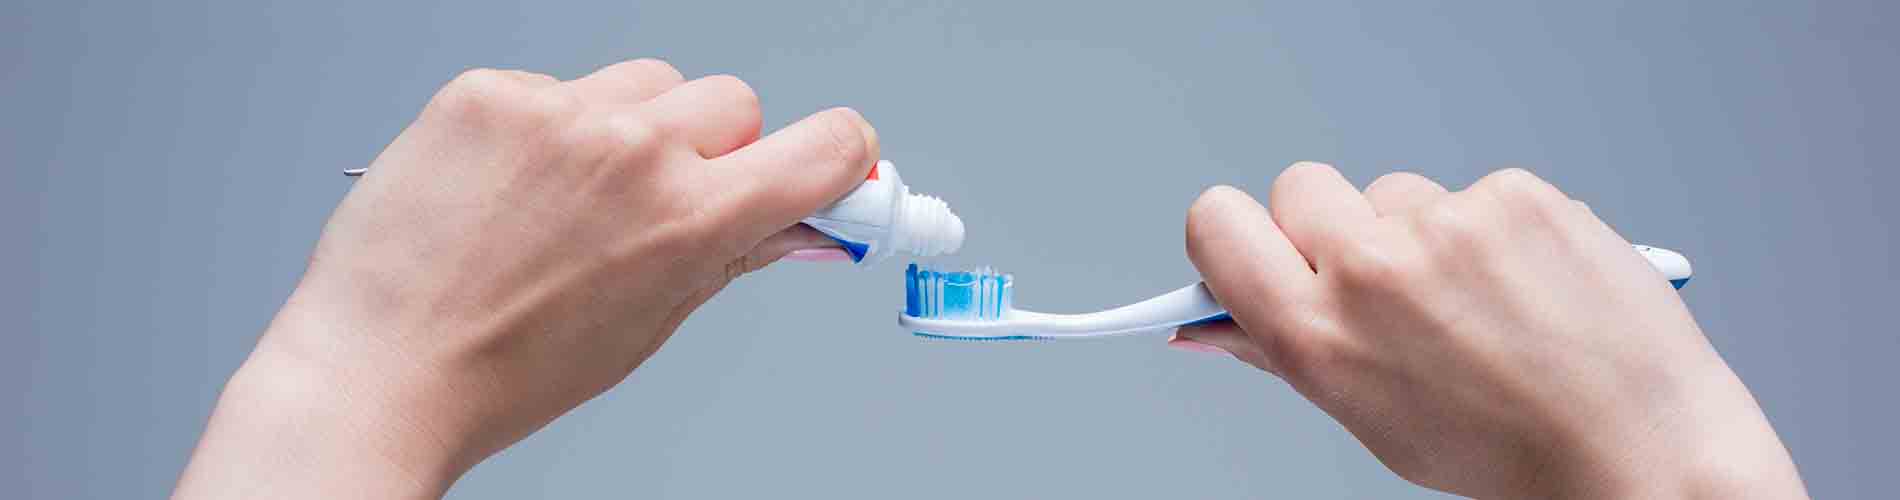 Los errores más comunes en el cepillado dental